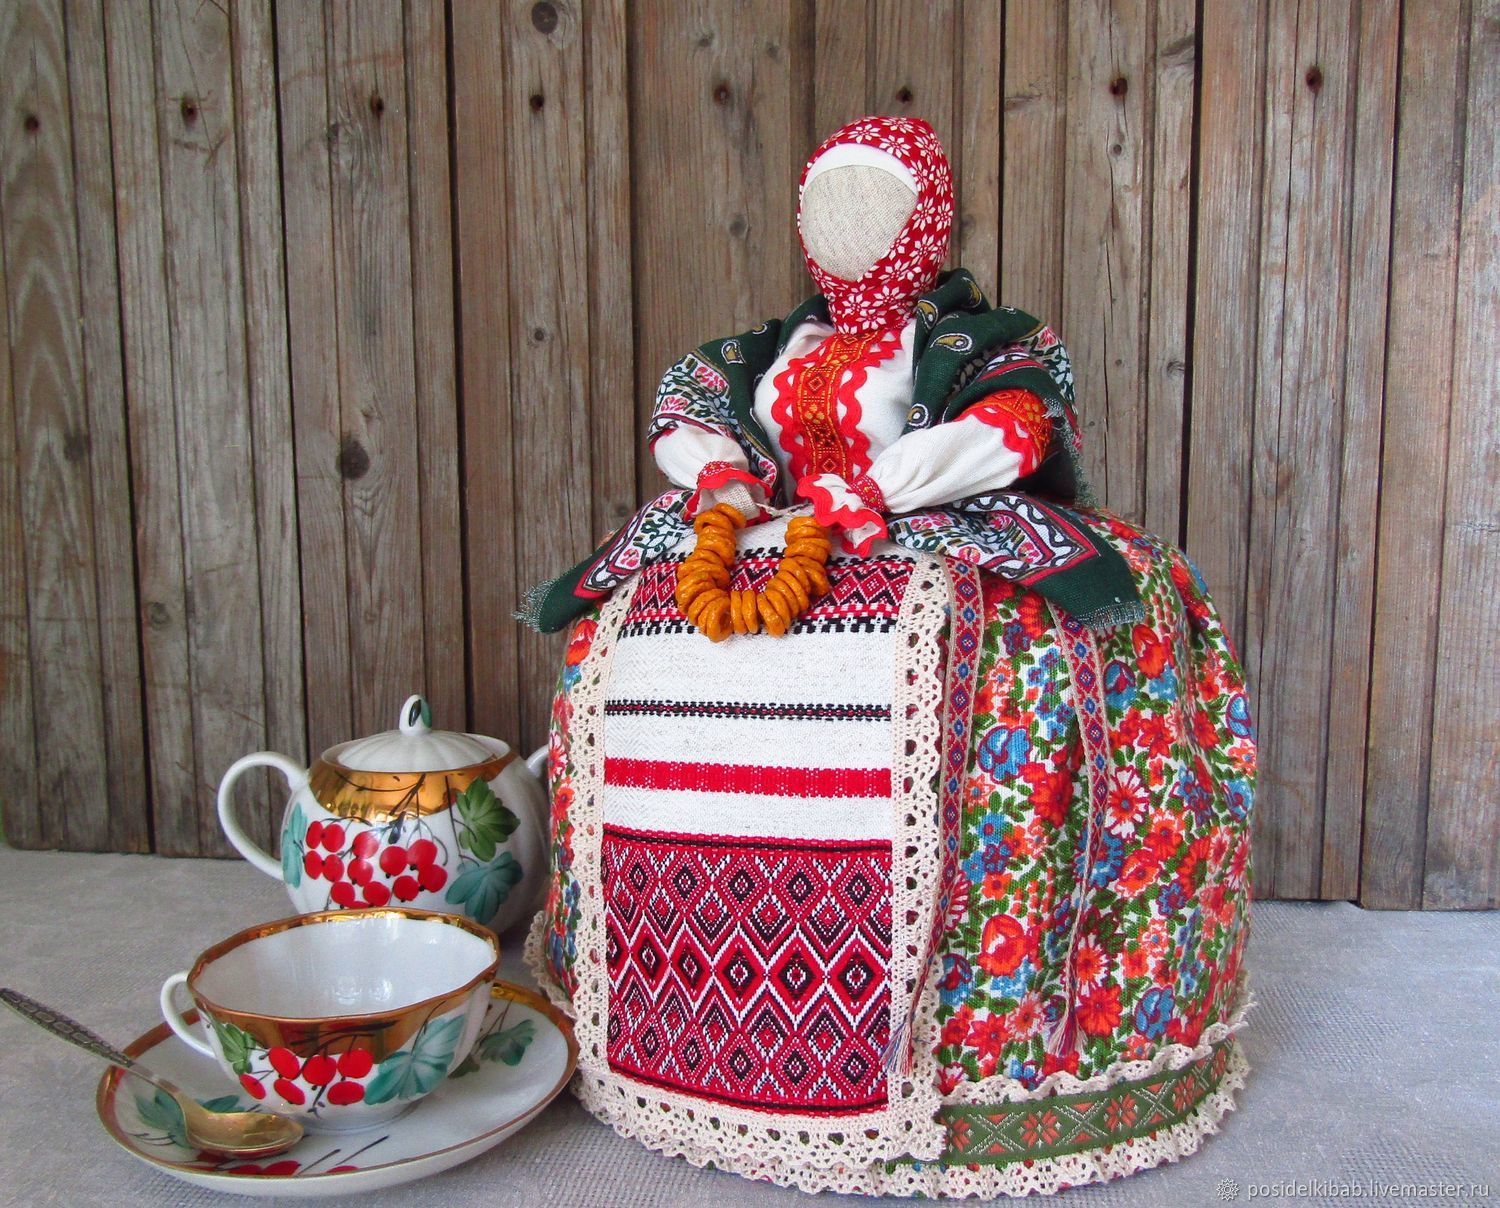 Куклы на чайник - - купить в Украине на kormstroytorg.ru